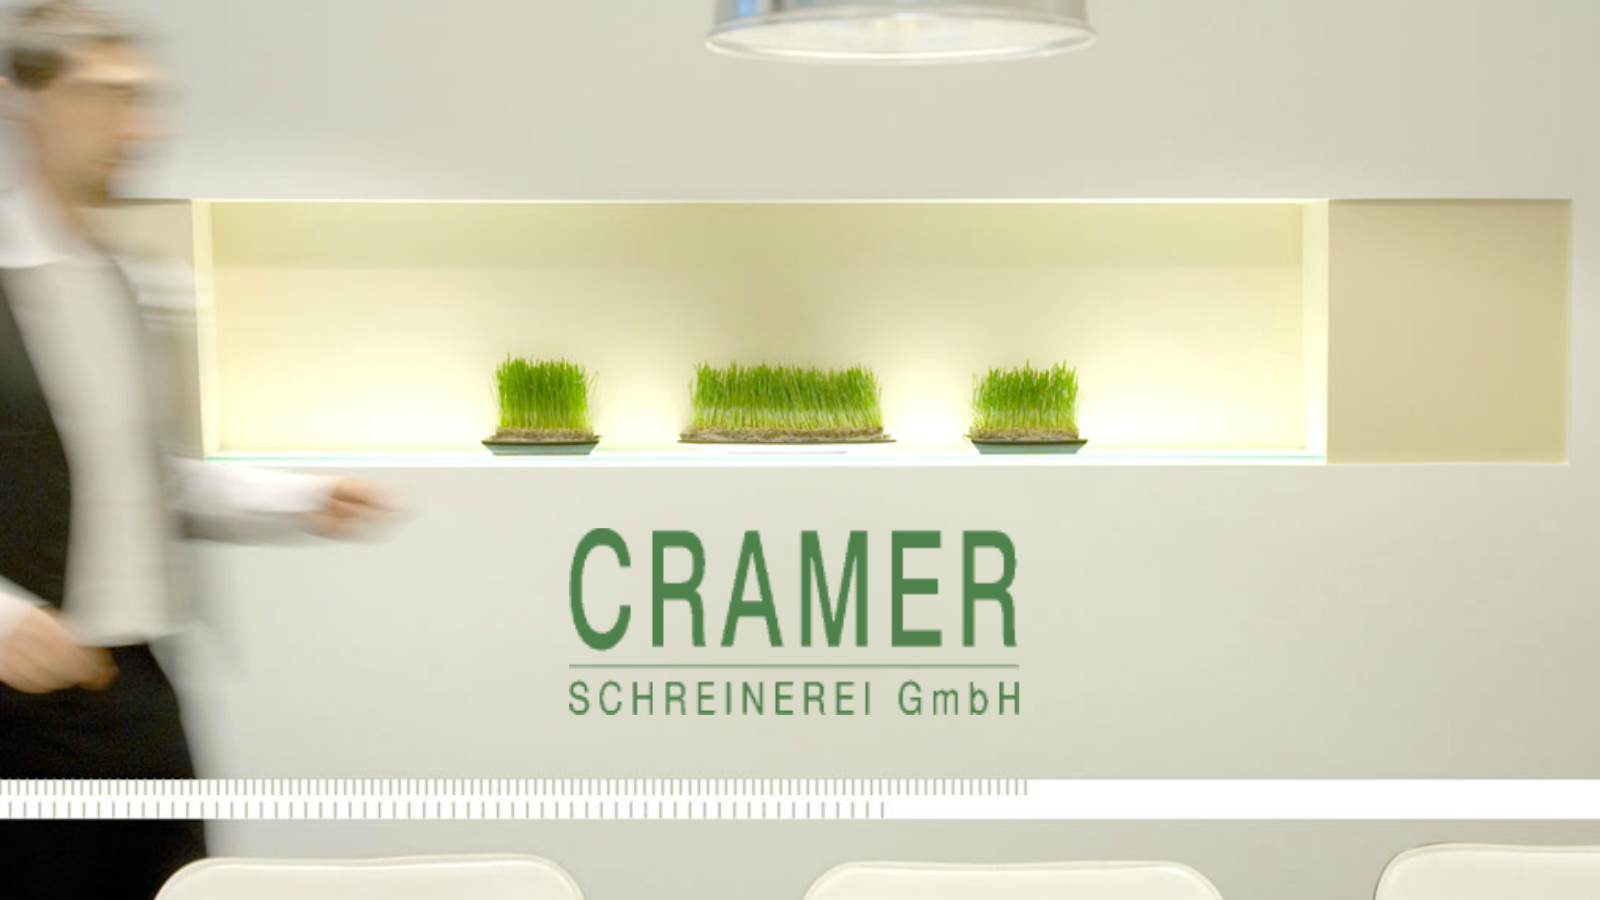 ➤ Cramer Schreinerei GmbH 50735 Köln-Niehl Öffnungszeiten | Adresse | Telefon 1